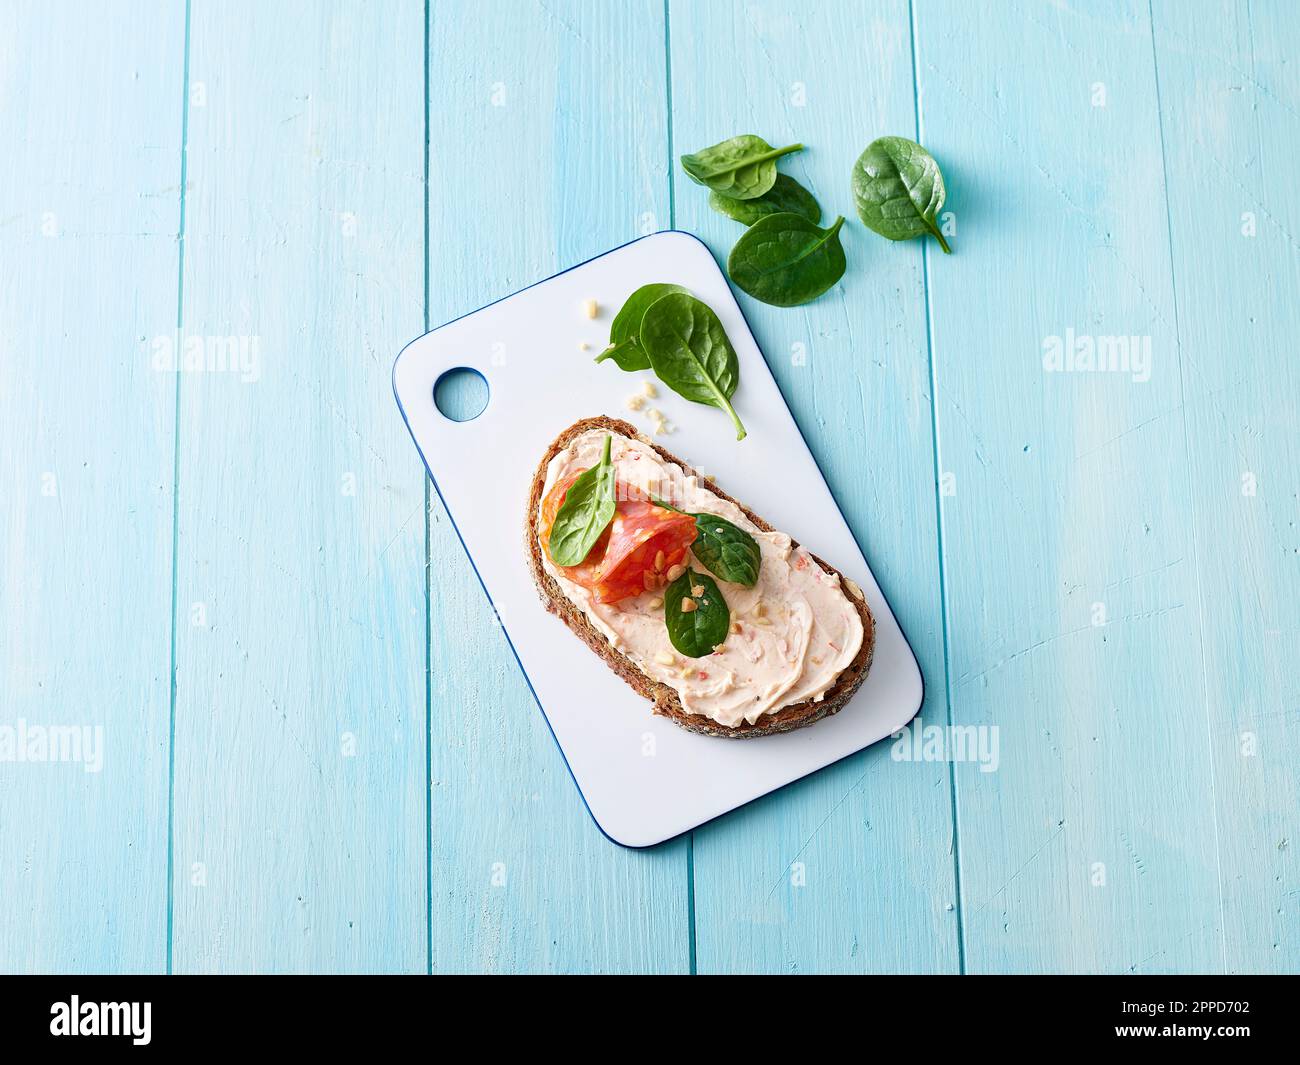 Studiofoto eines verzehrfertigen Sandwichs mit Frischkäse, Salami und Spinat Stockfoto